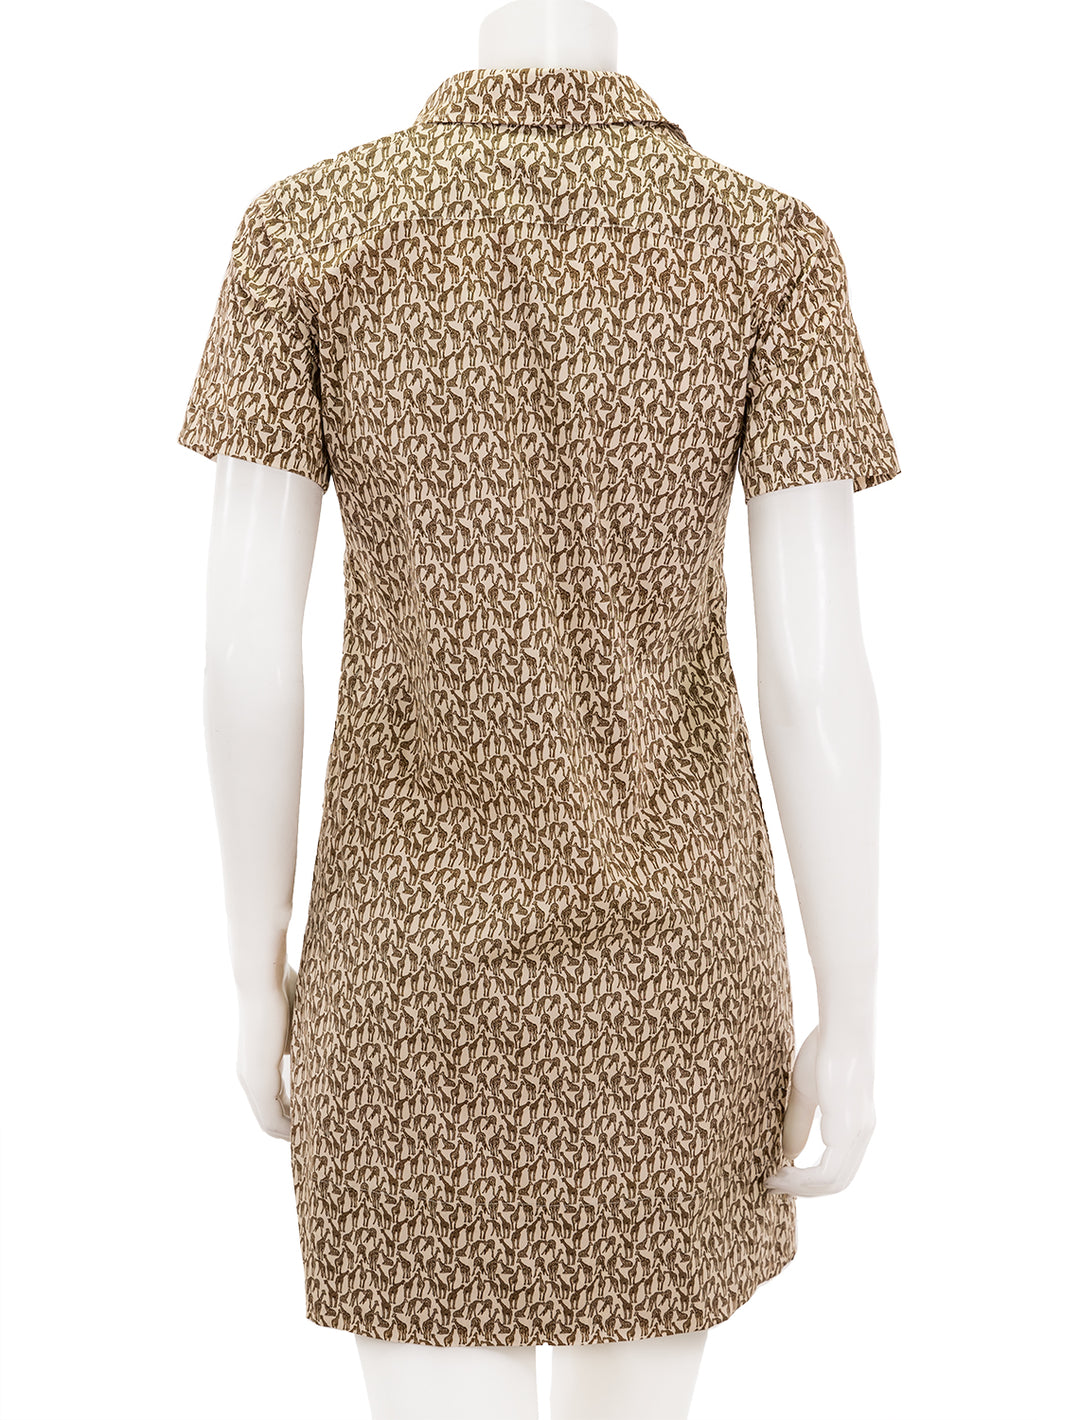 Back view of Ann Mashburn's short sleeved popover dress in giraffe print.